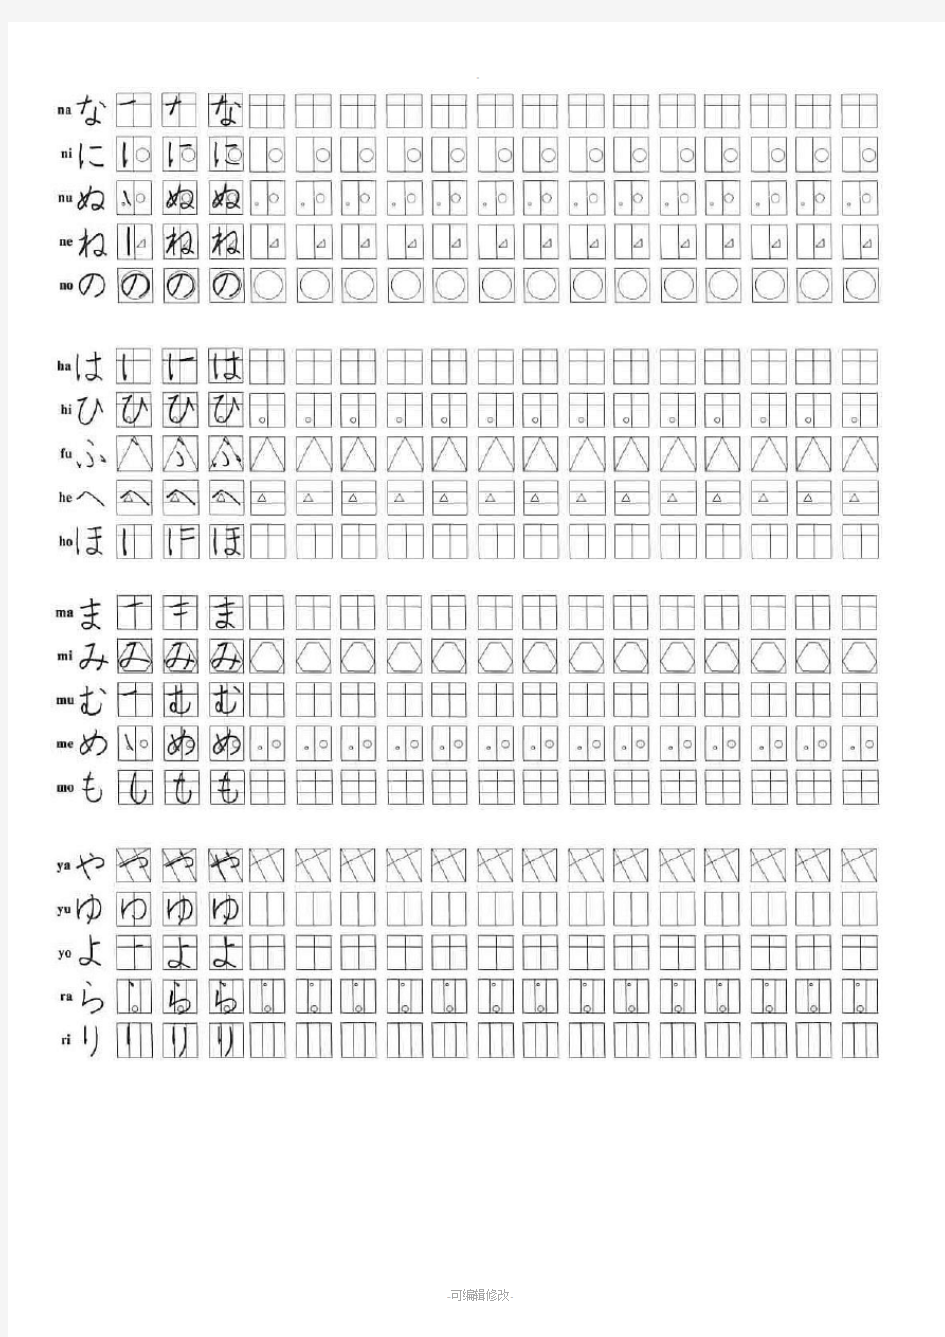 图示日语五十音图书写练习